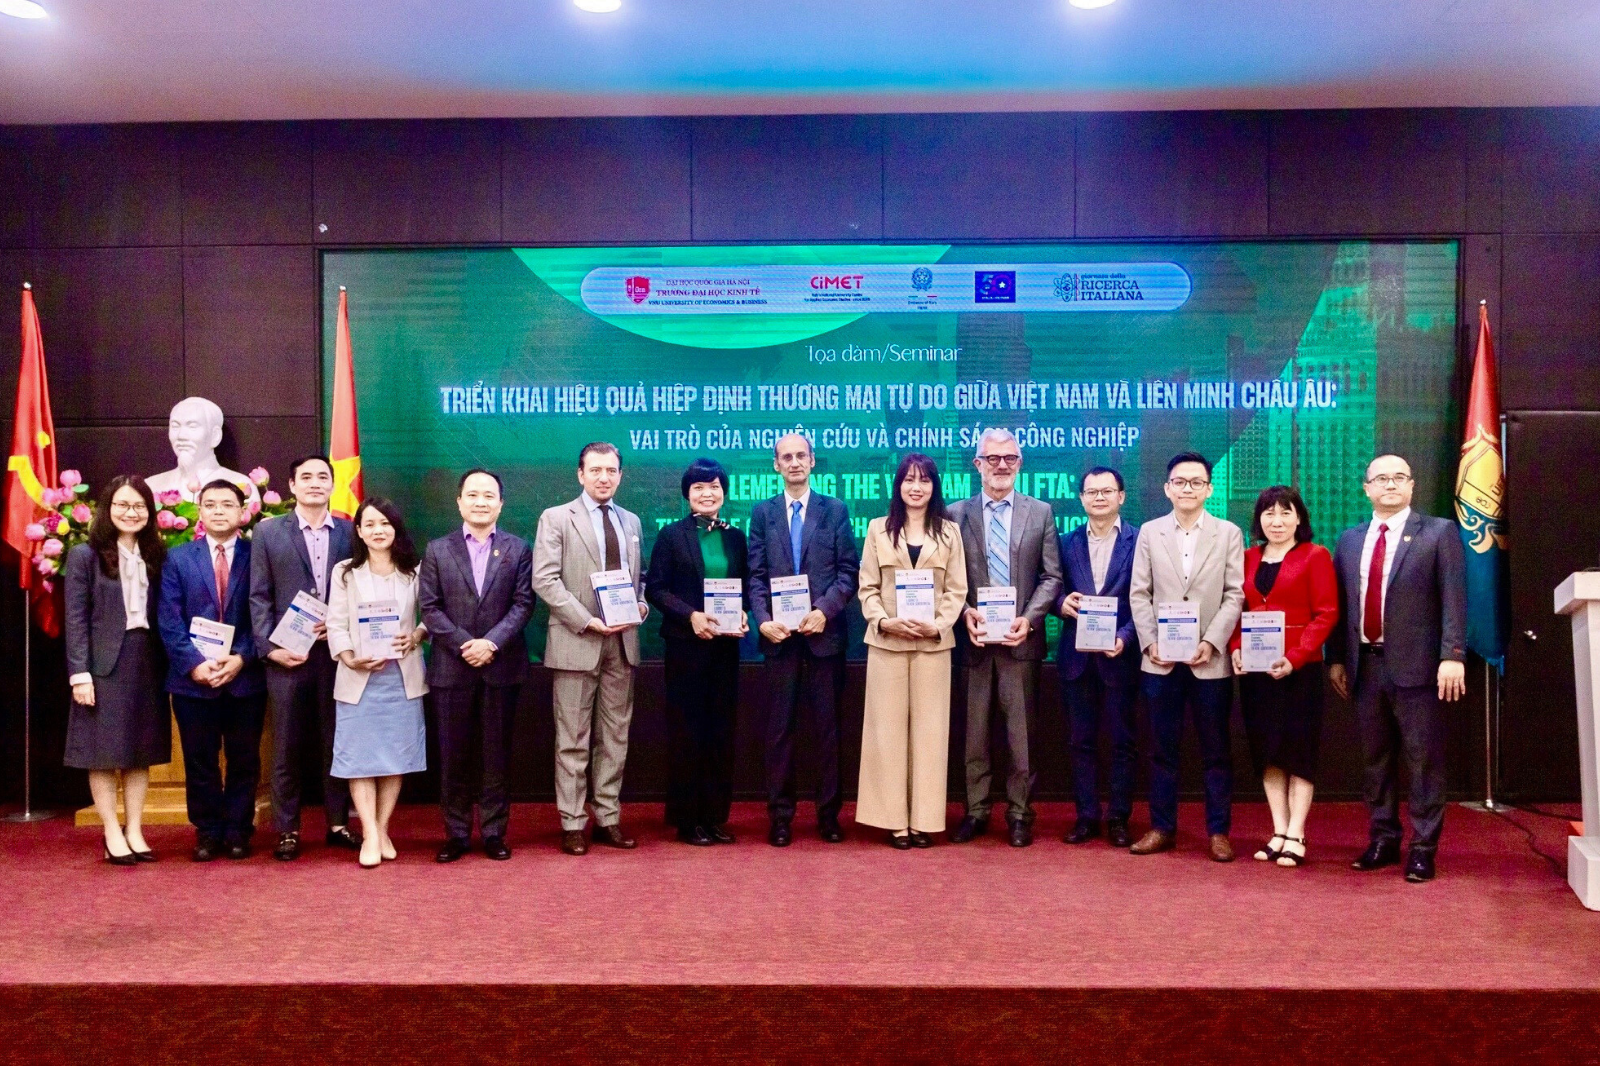 UEB tổ chức tọa đàm: Triển khai hiệu quả hiệp định thương mại tự do giữa Việt Nam và Liên minh Châu Âu: Vai trò của nghiên cứu và chính sách công nghiệp 